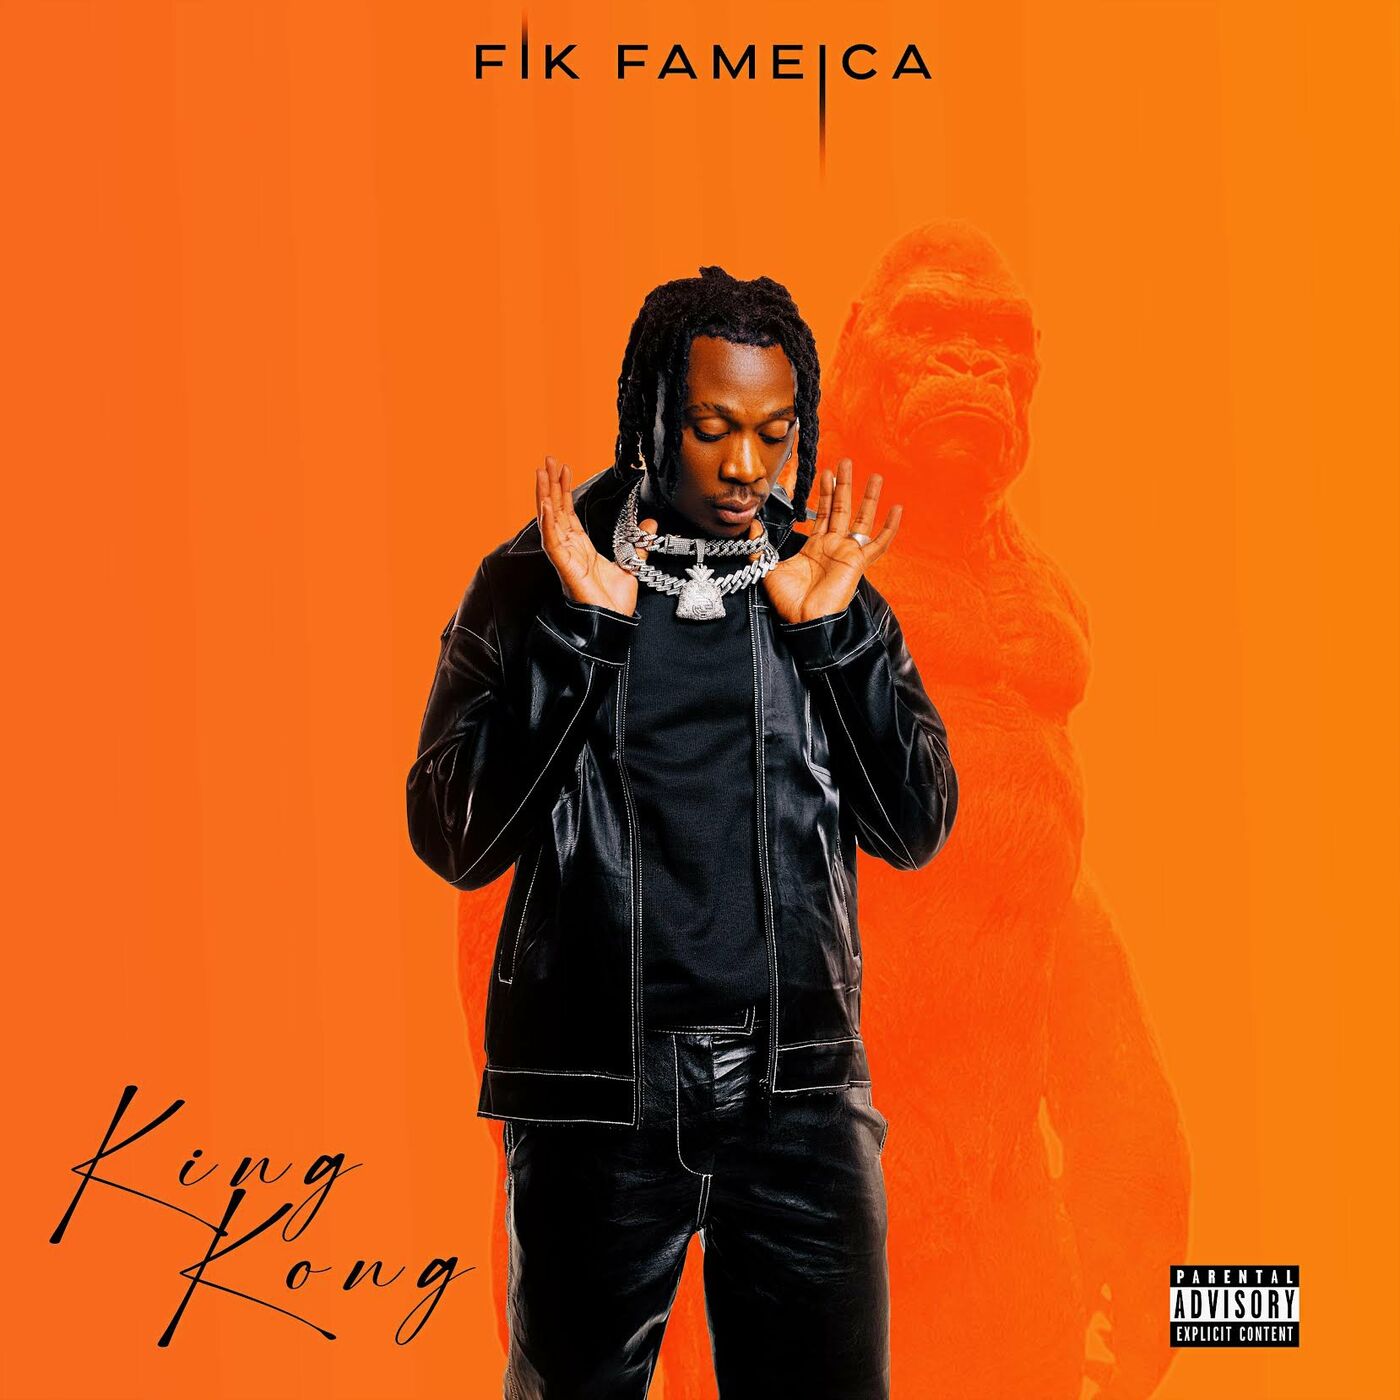 fik-fameica-magic-album-cover